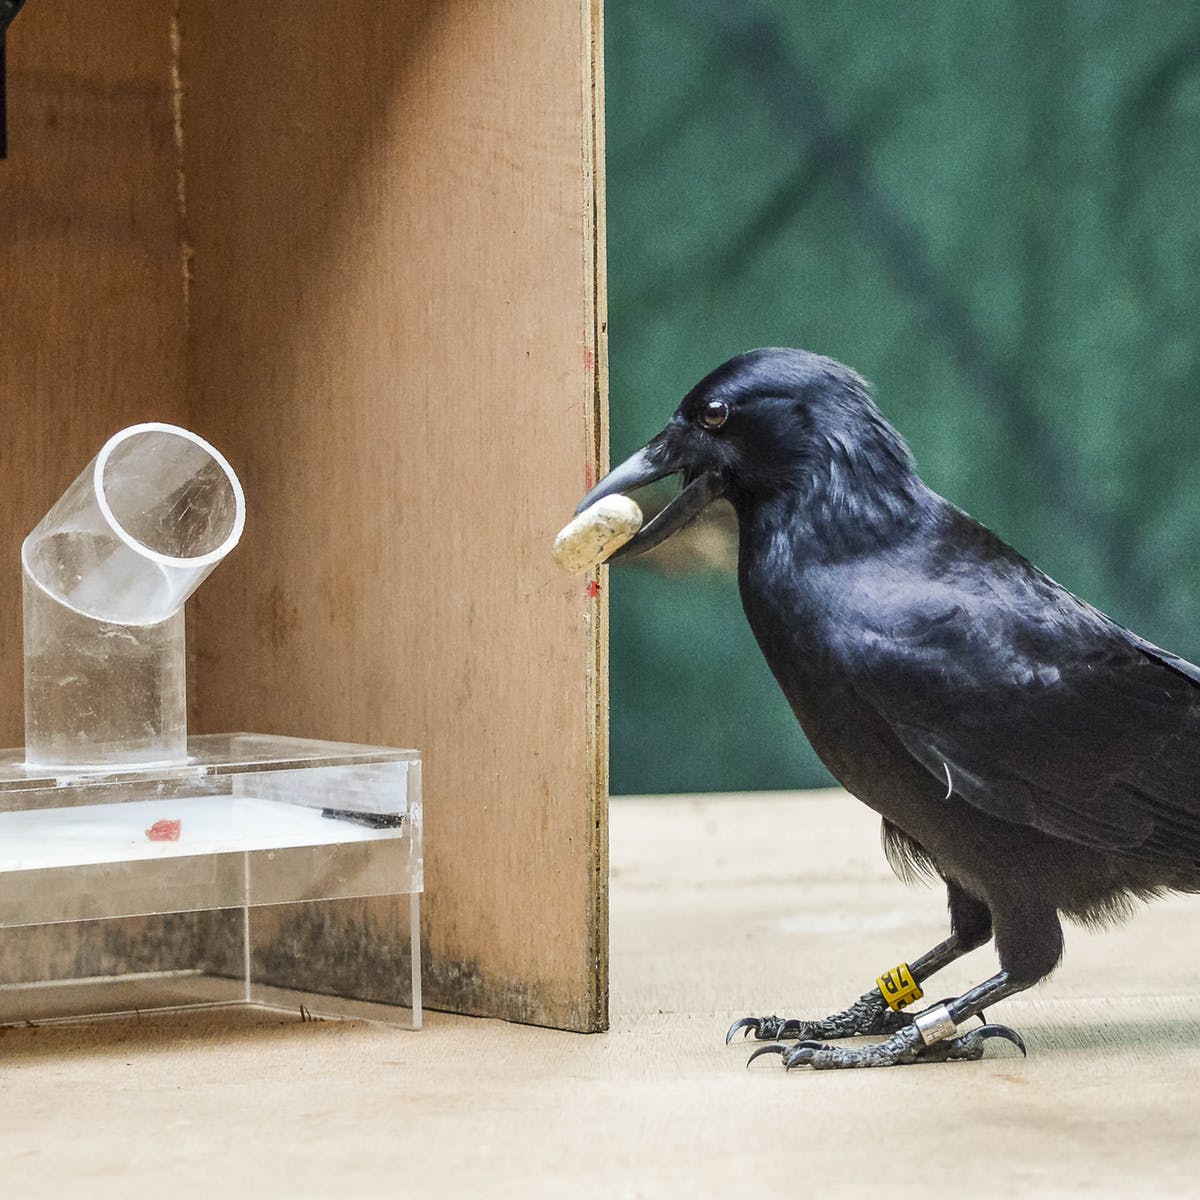 乌鸦可以比较聪明的灵长类动物?